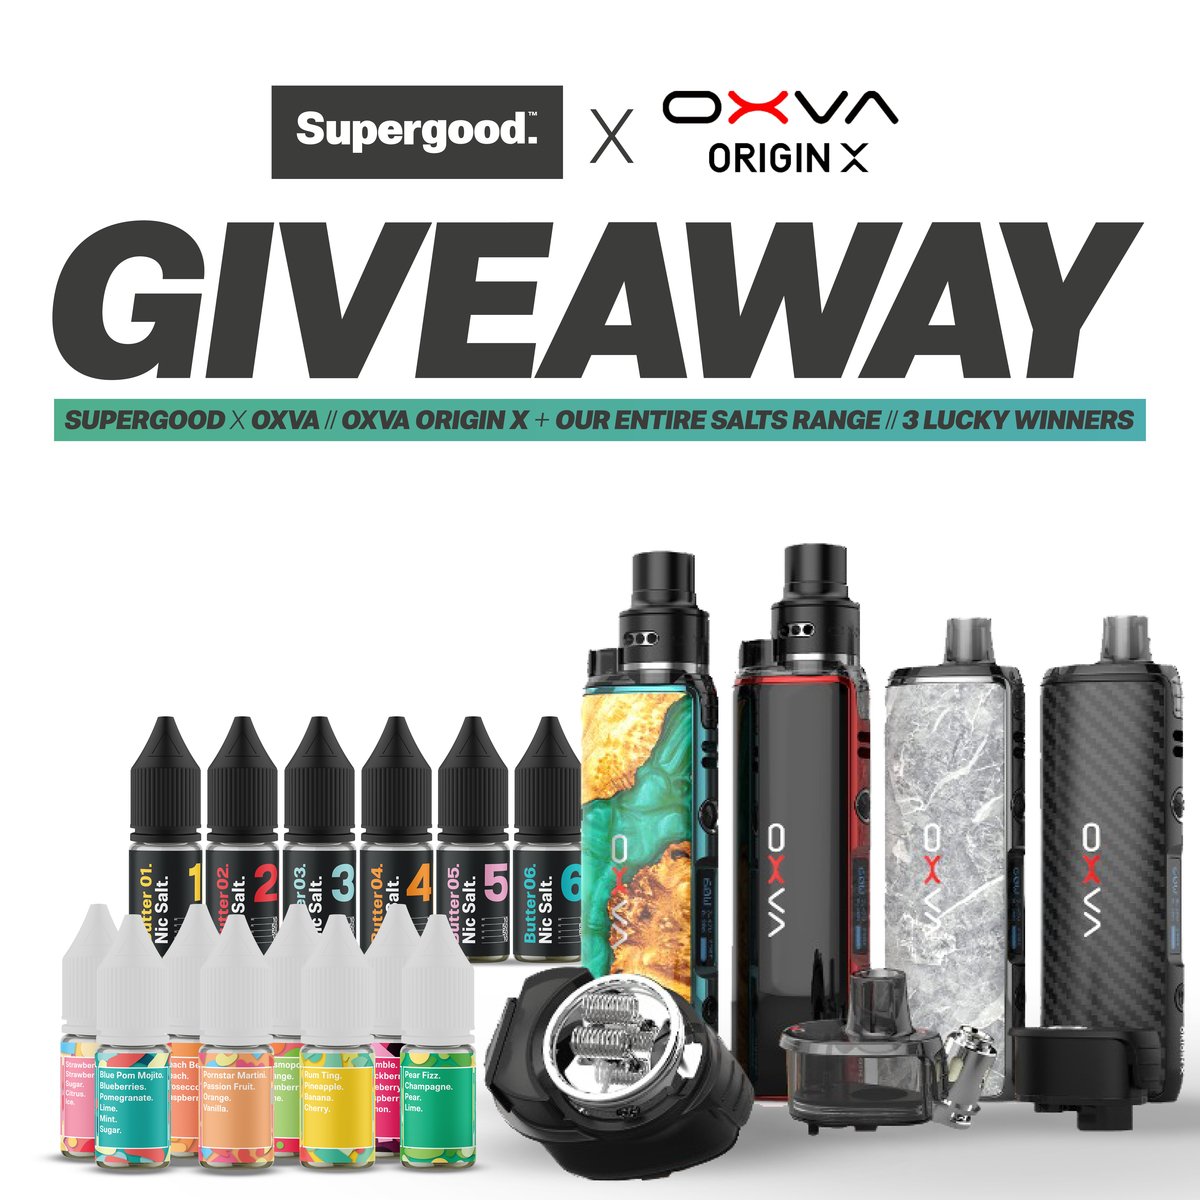 OXVA X Supergood Giveaway.